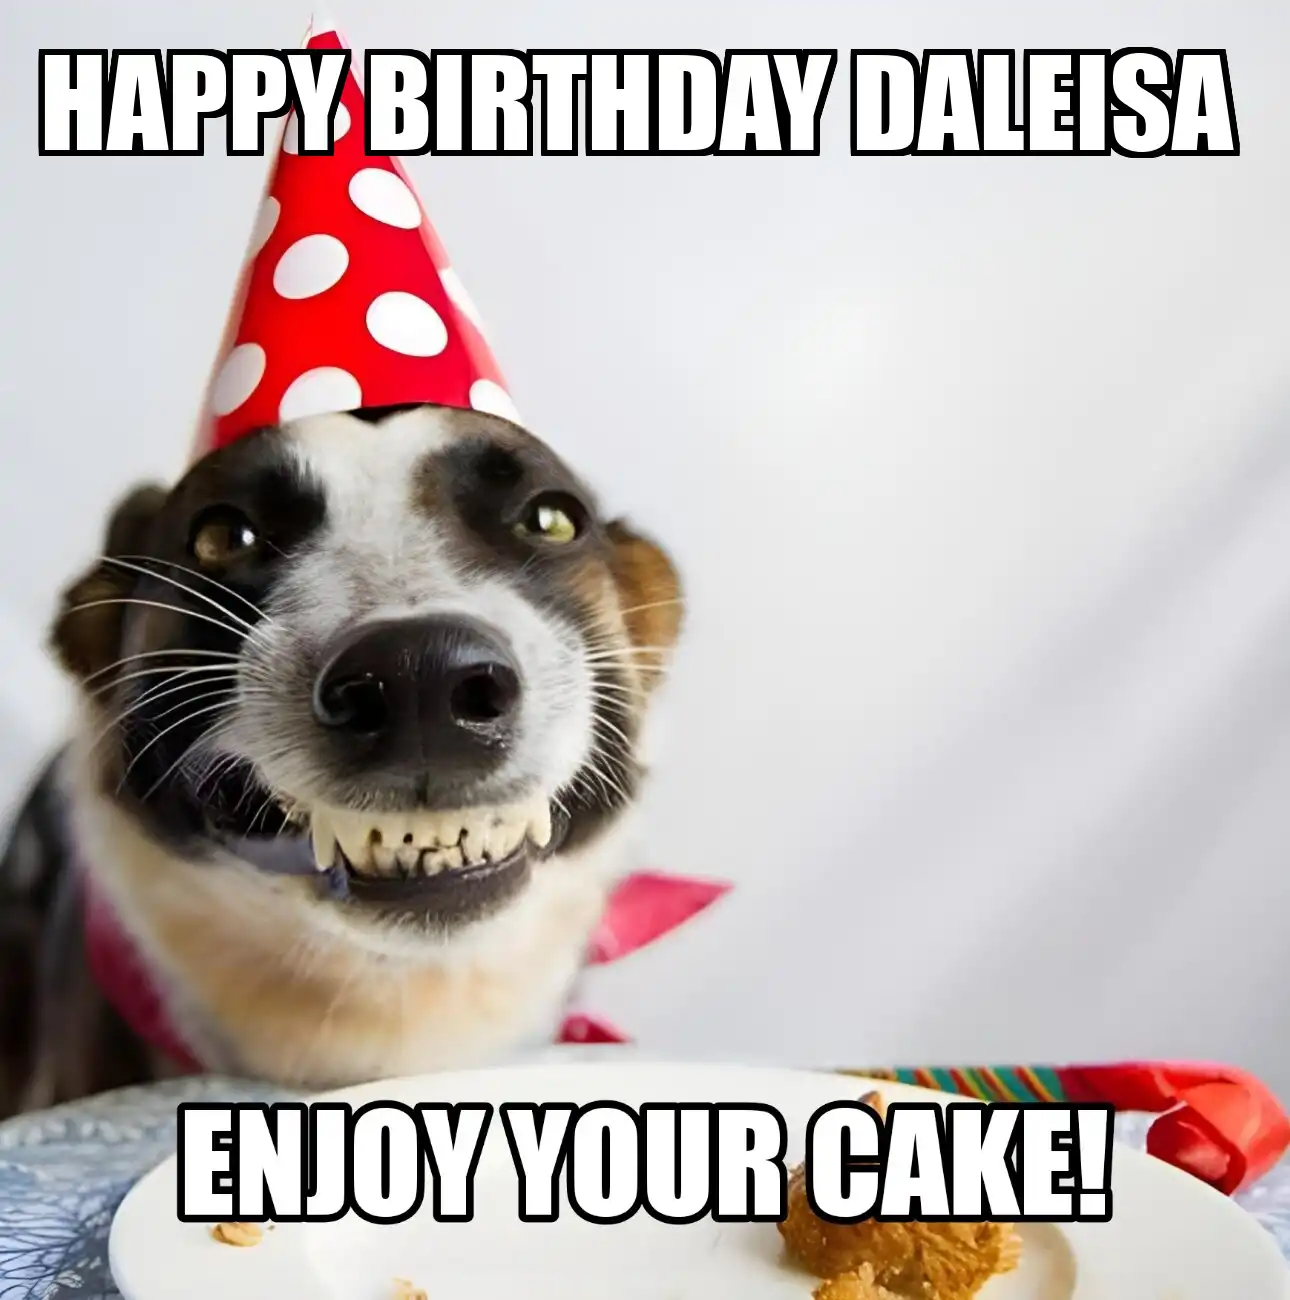 Happy Birthday Daleisa Enjoy Your Cake Dog Meme